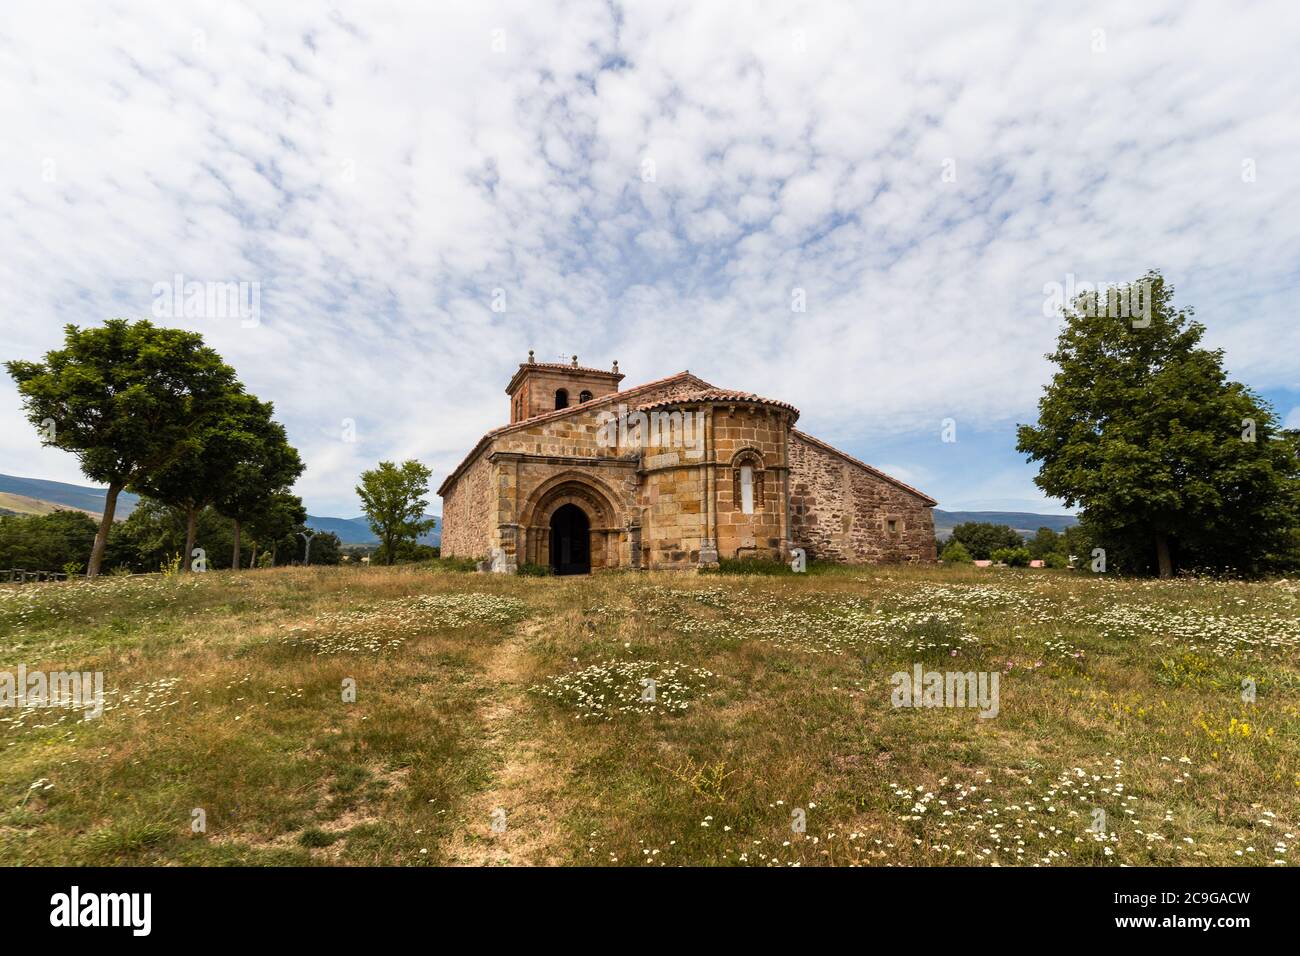 Romanesque church in Villacantid, Cantabria Stock Photo